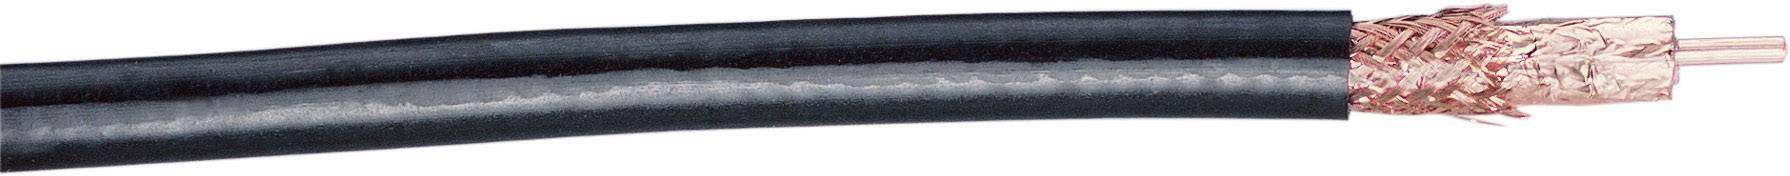 SSB Koaxialkabel Außen-Durchmesser: 10.20 mm AIRCELL® PREMIUM 50 ¿ 75 dB Schwarz SSB 60600 Meterware